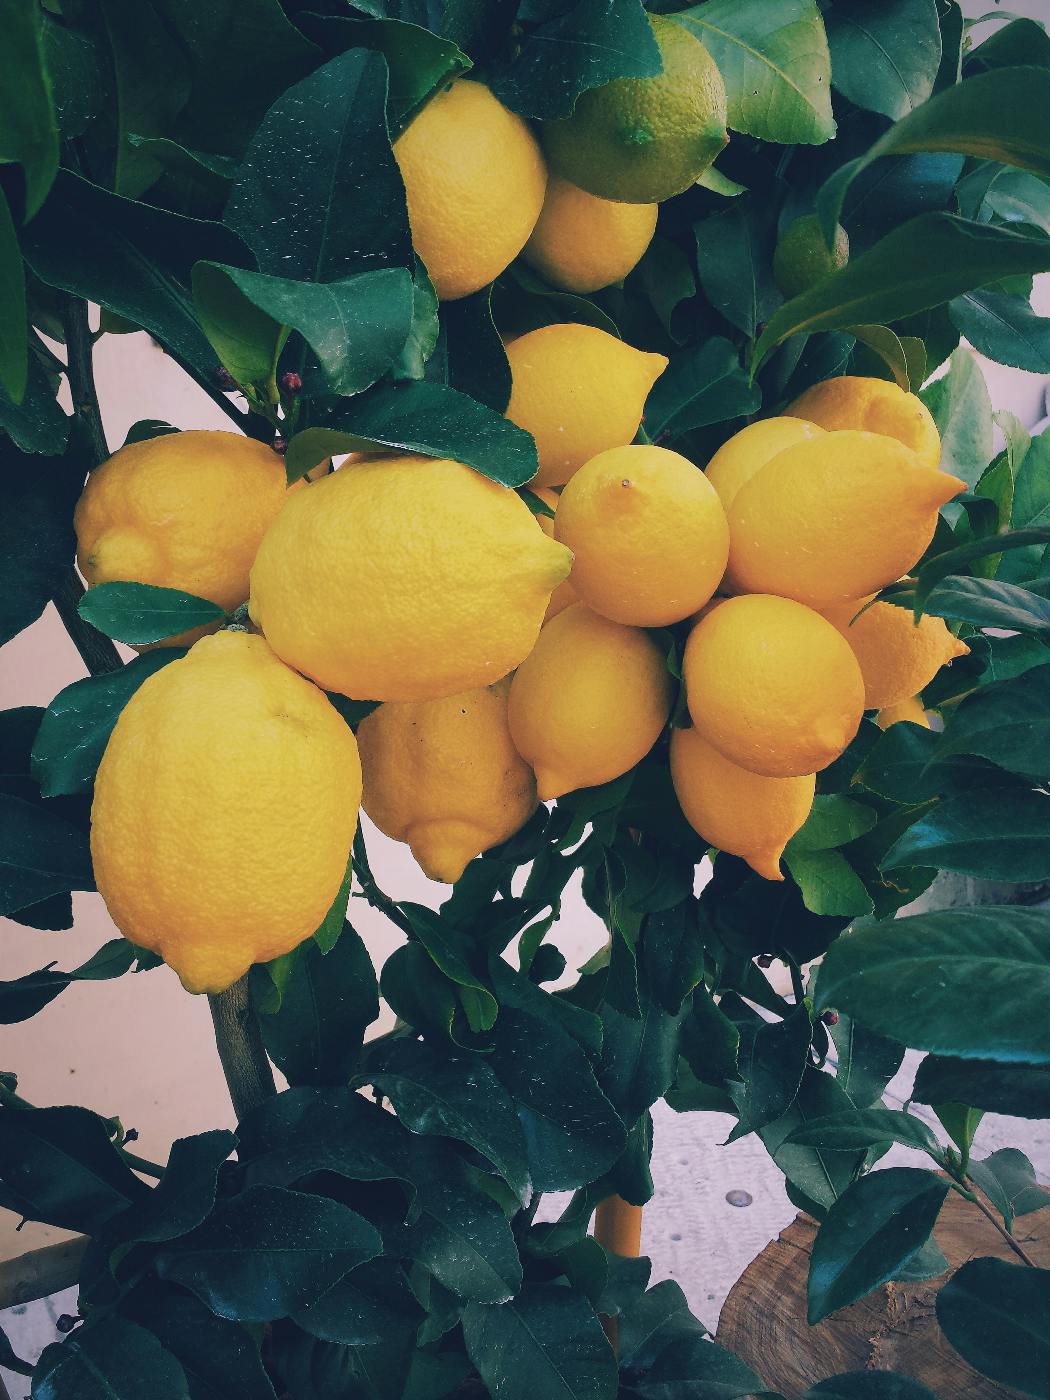 Lemons on a tree